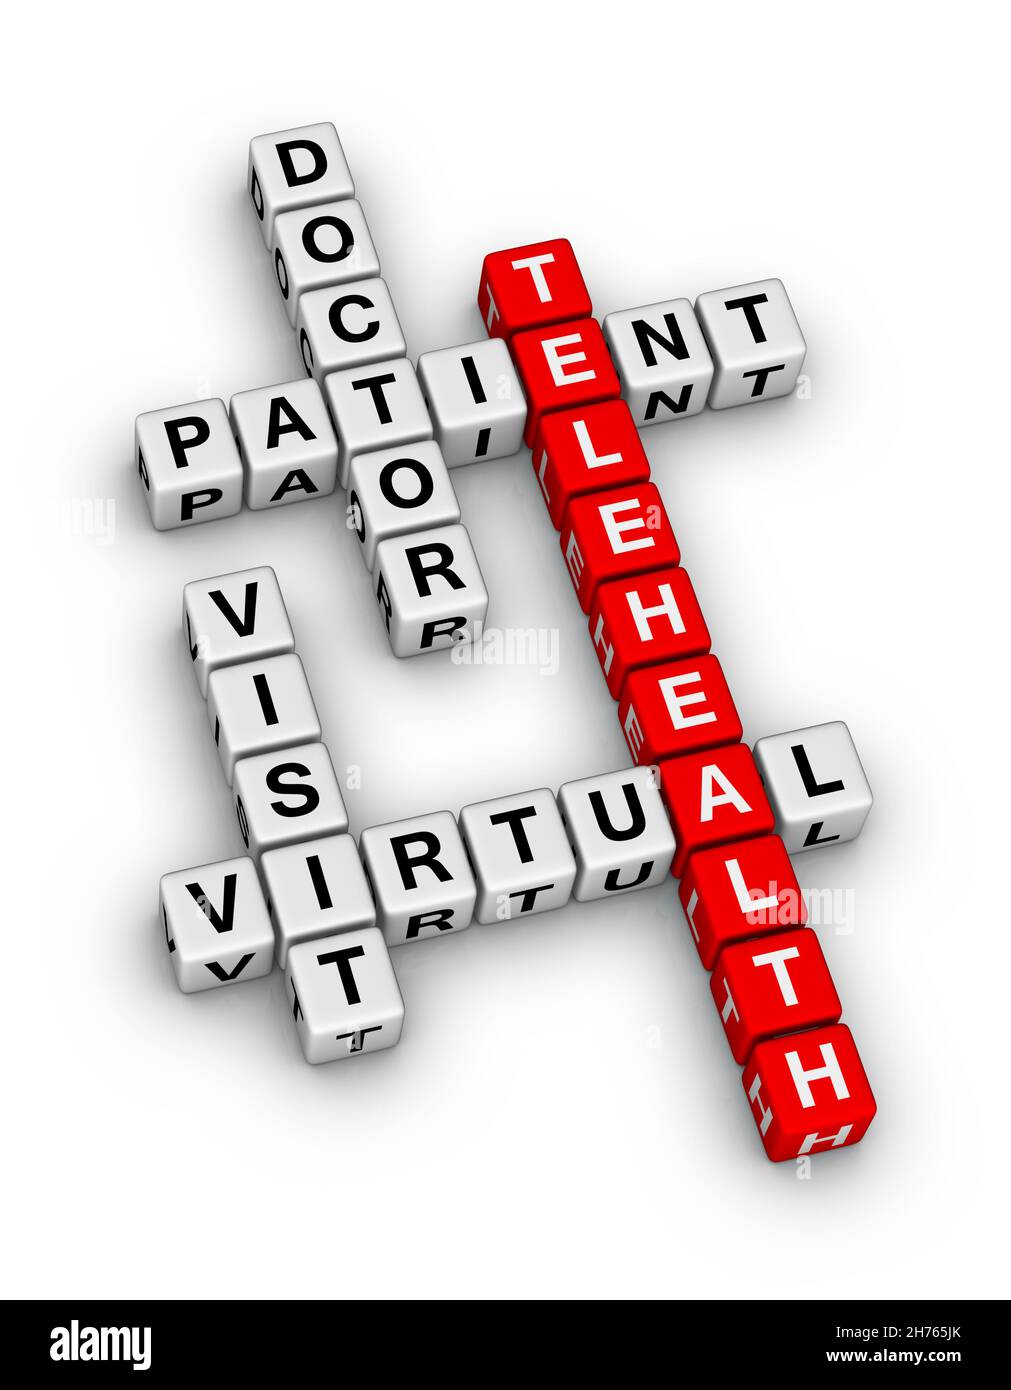 Visita virtual Telehealth Doctor y Paciente. Puzzle de 3D crucigramas de alta calidad sobre fondo blanco. Foto de stock